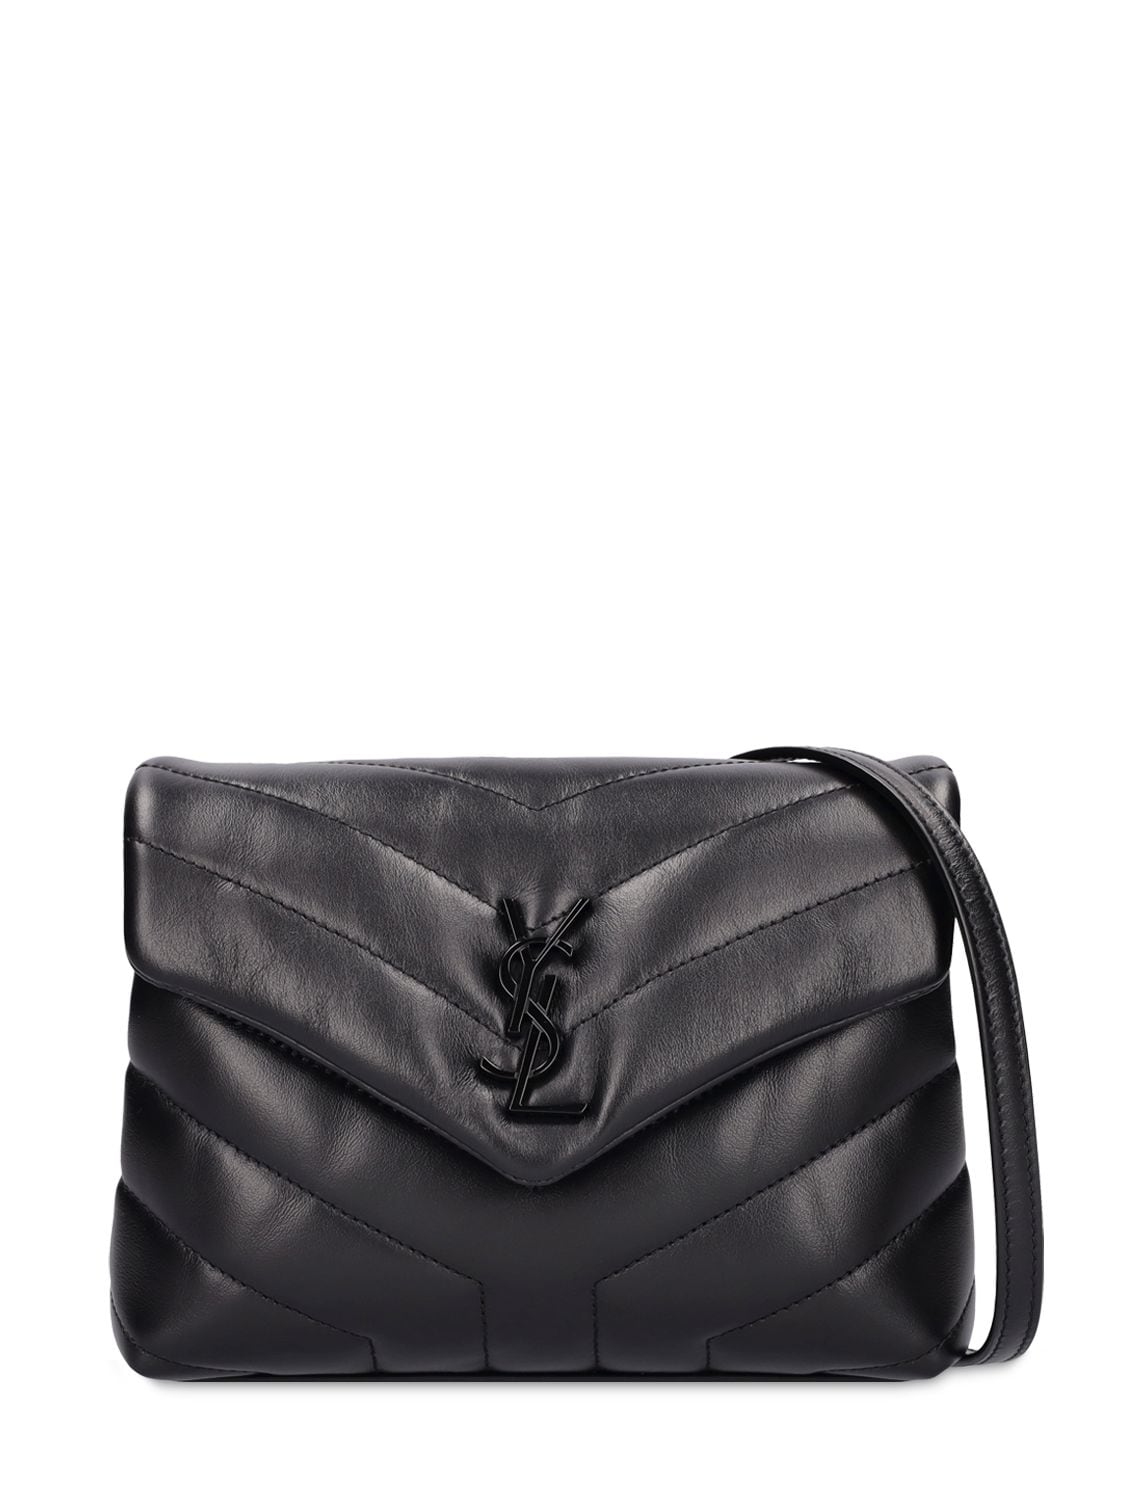 Saint Laurent Toy Loulou Shoulder Bag In Black